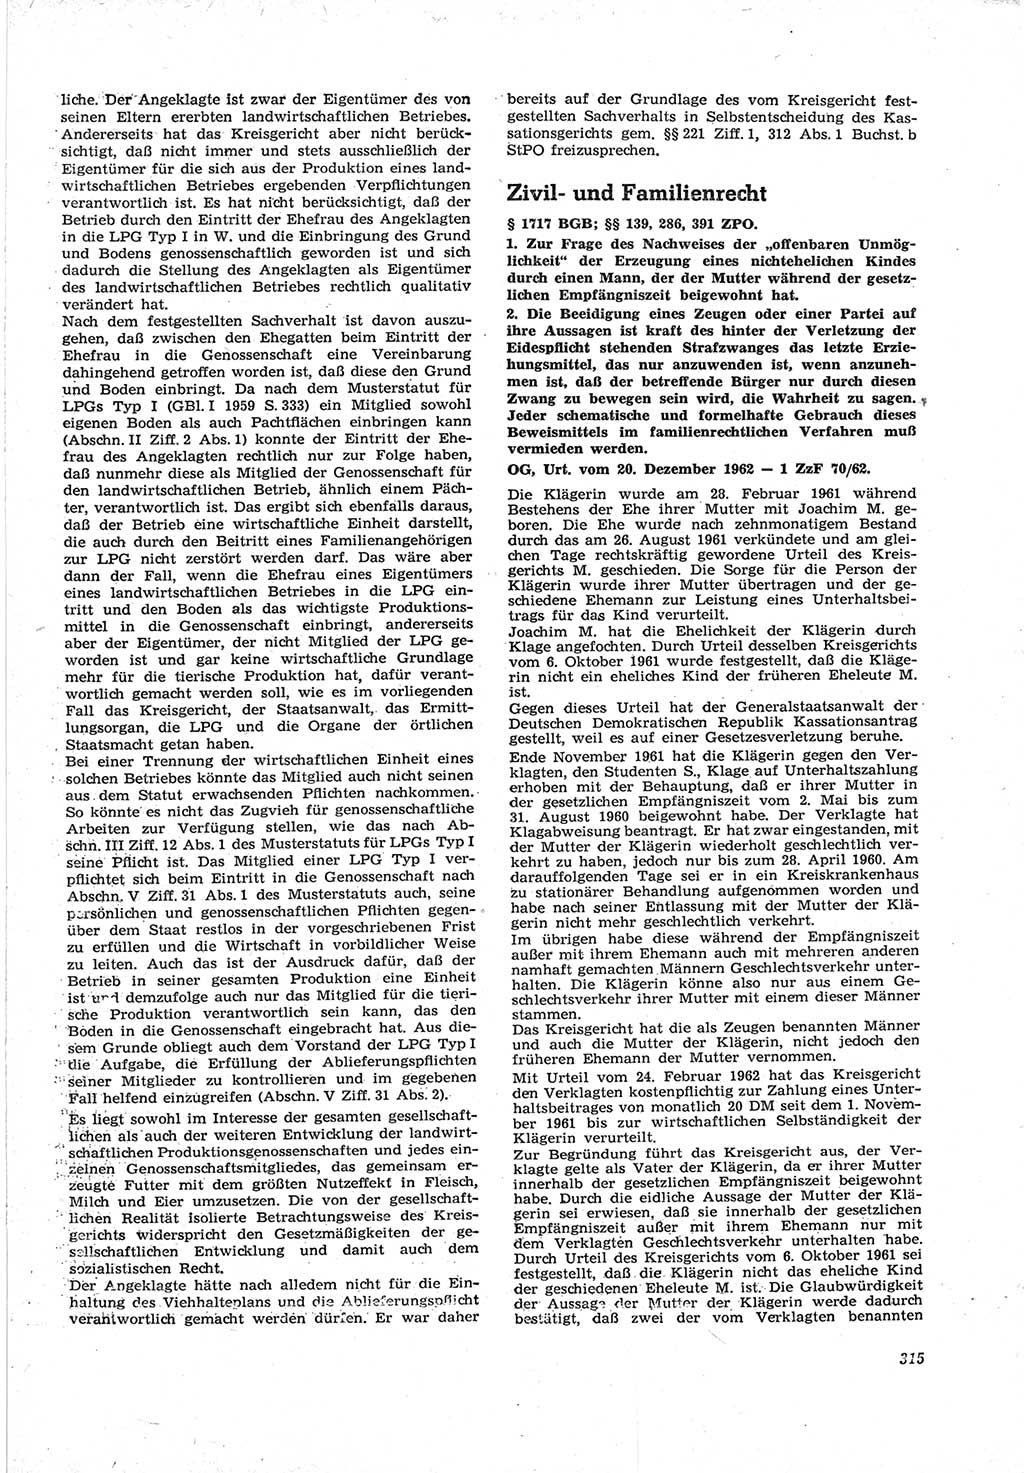 Neue Justiz (NJ), Zeitschrift für Recht und Rechtswissenschaft [Deutsche Demokratische Republik (DDR)], 17. Jahrgang 1963, Seite 315 (NJ DDR 1963, S. 315)